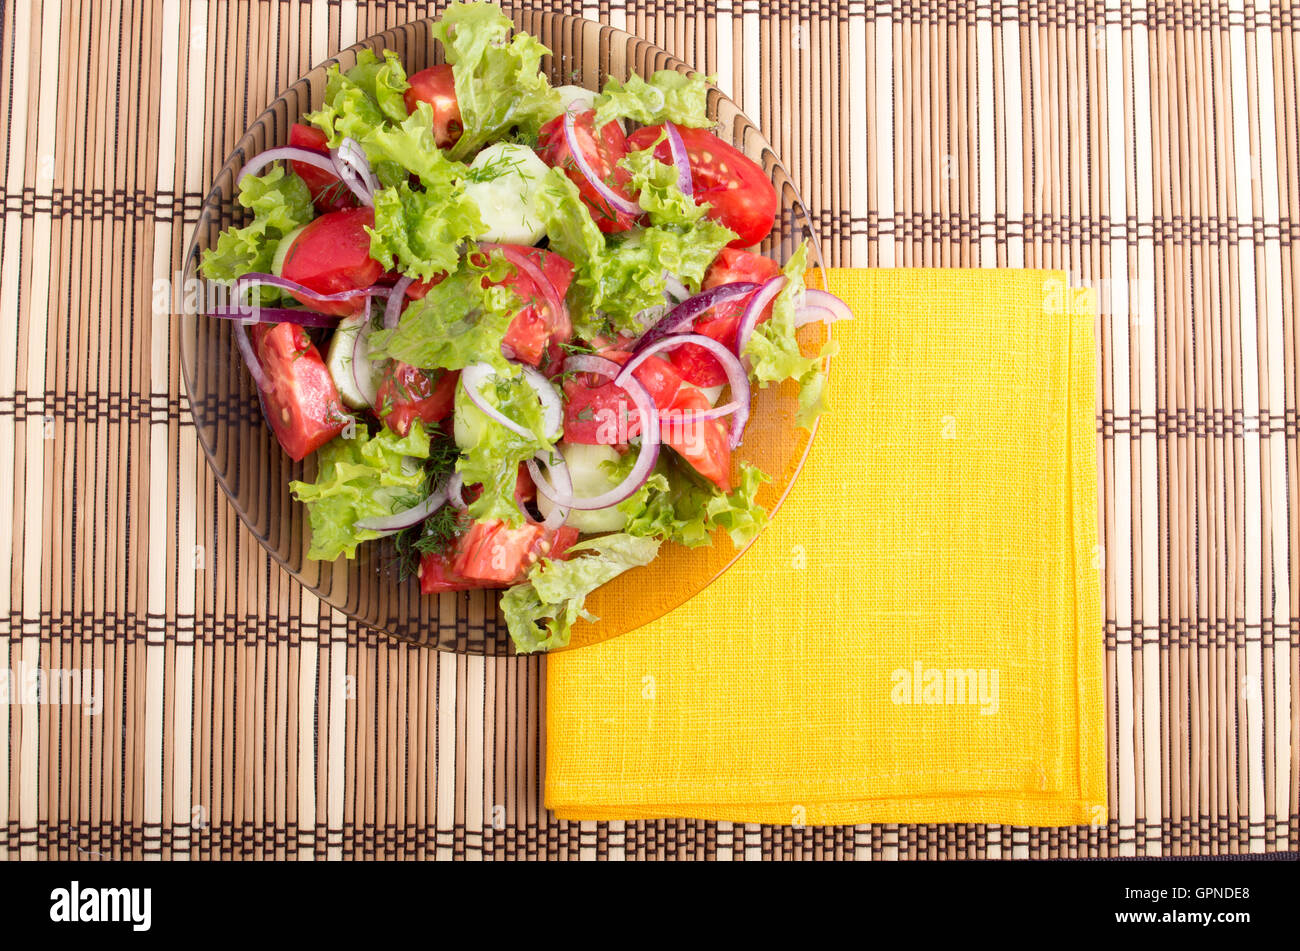 Plaque transparente avec salade d'été frais et une serviette jaune vif sur une table recouverte d'un tapis de bambou Banque D'Images